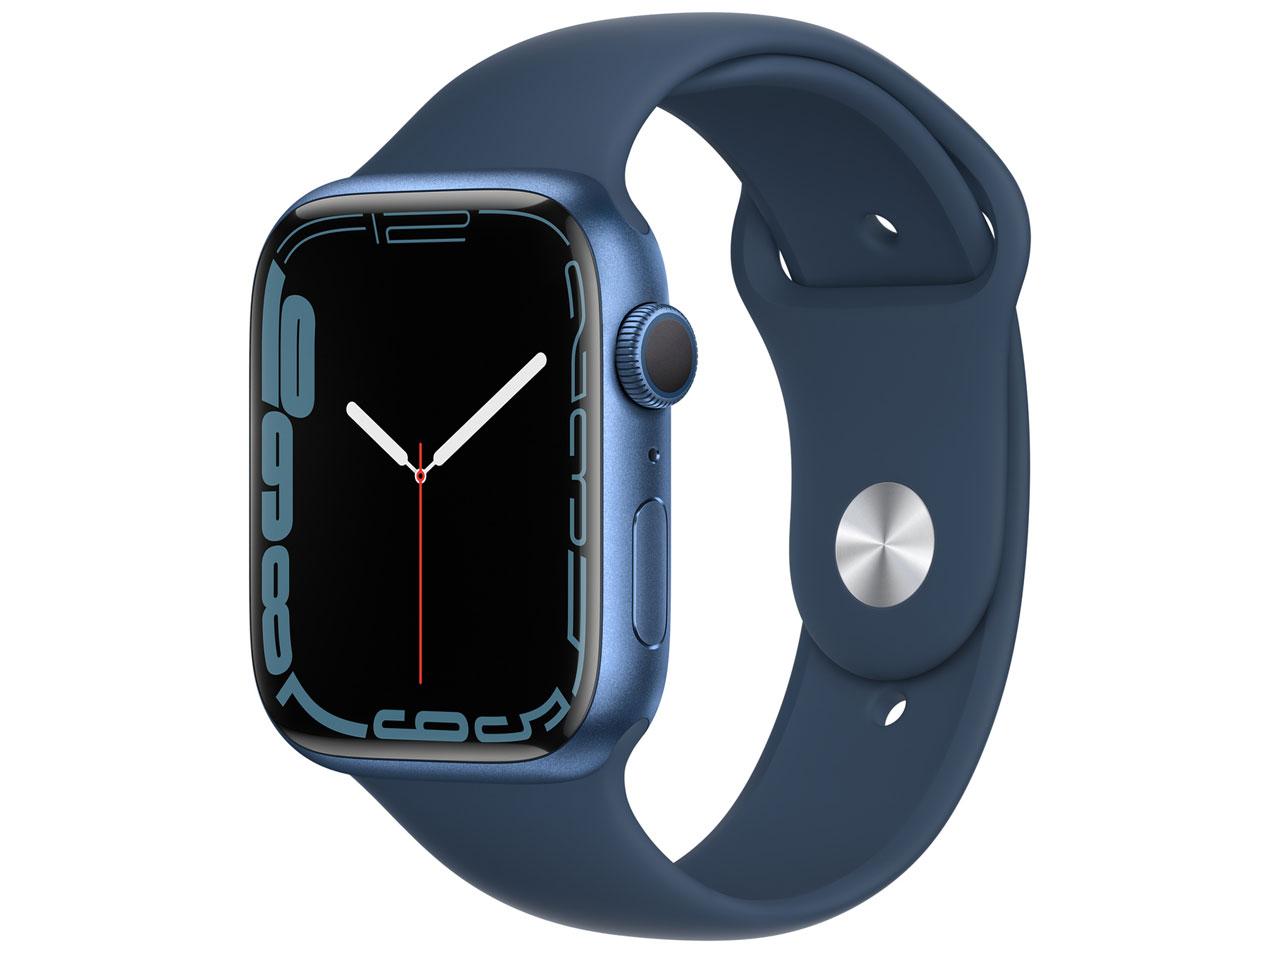 Apple Watch 4549995257878 日本限定 Series 7 GPSモデル 41mm MKN13J 41mmブルーアルミニウムケースとアビスブルースポーツバンド ブルーアルミニウムケース 送料無料 爆売り A 新品 在庫あり MKN13JA レギュラー